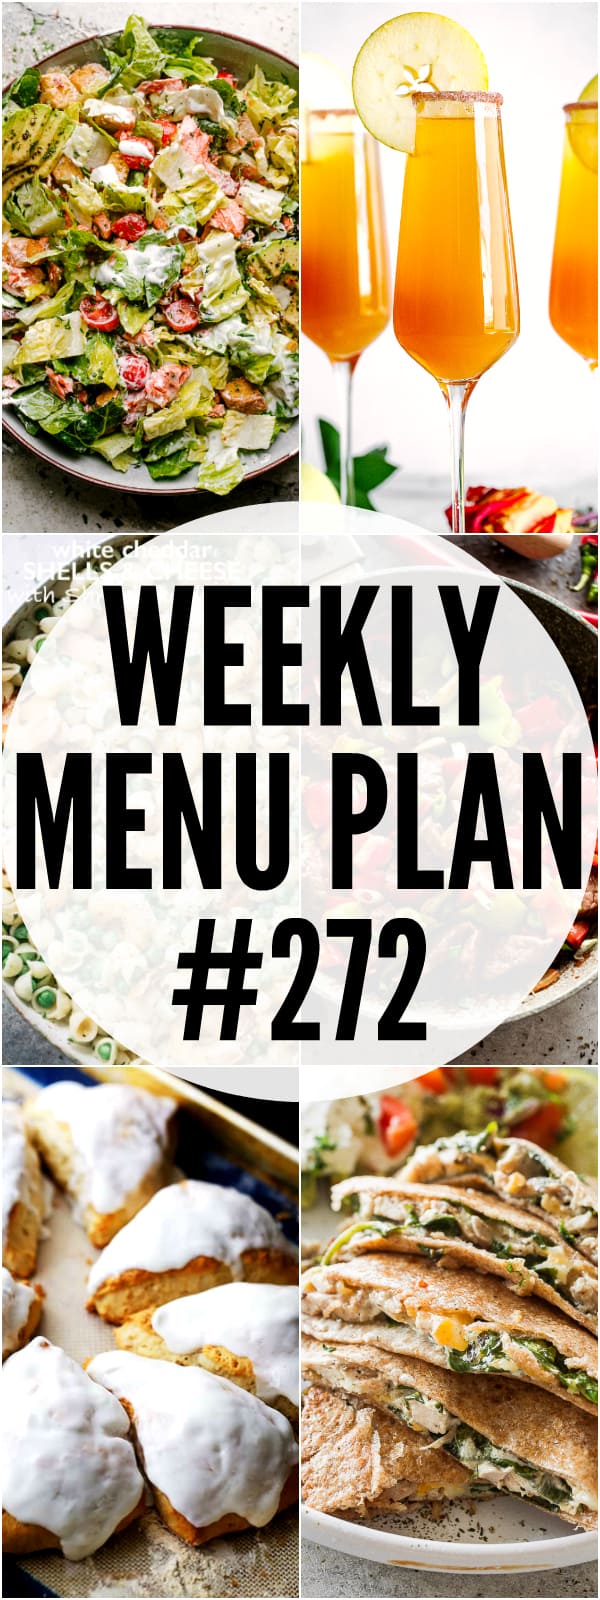 weekly menu plan 272 pinterest image